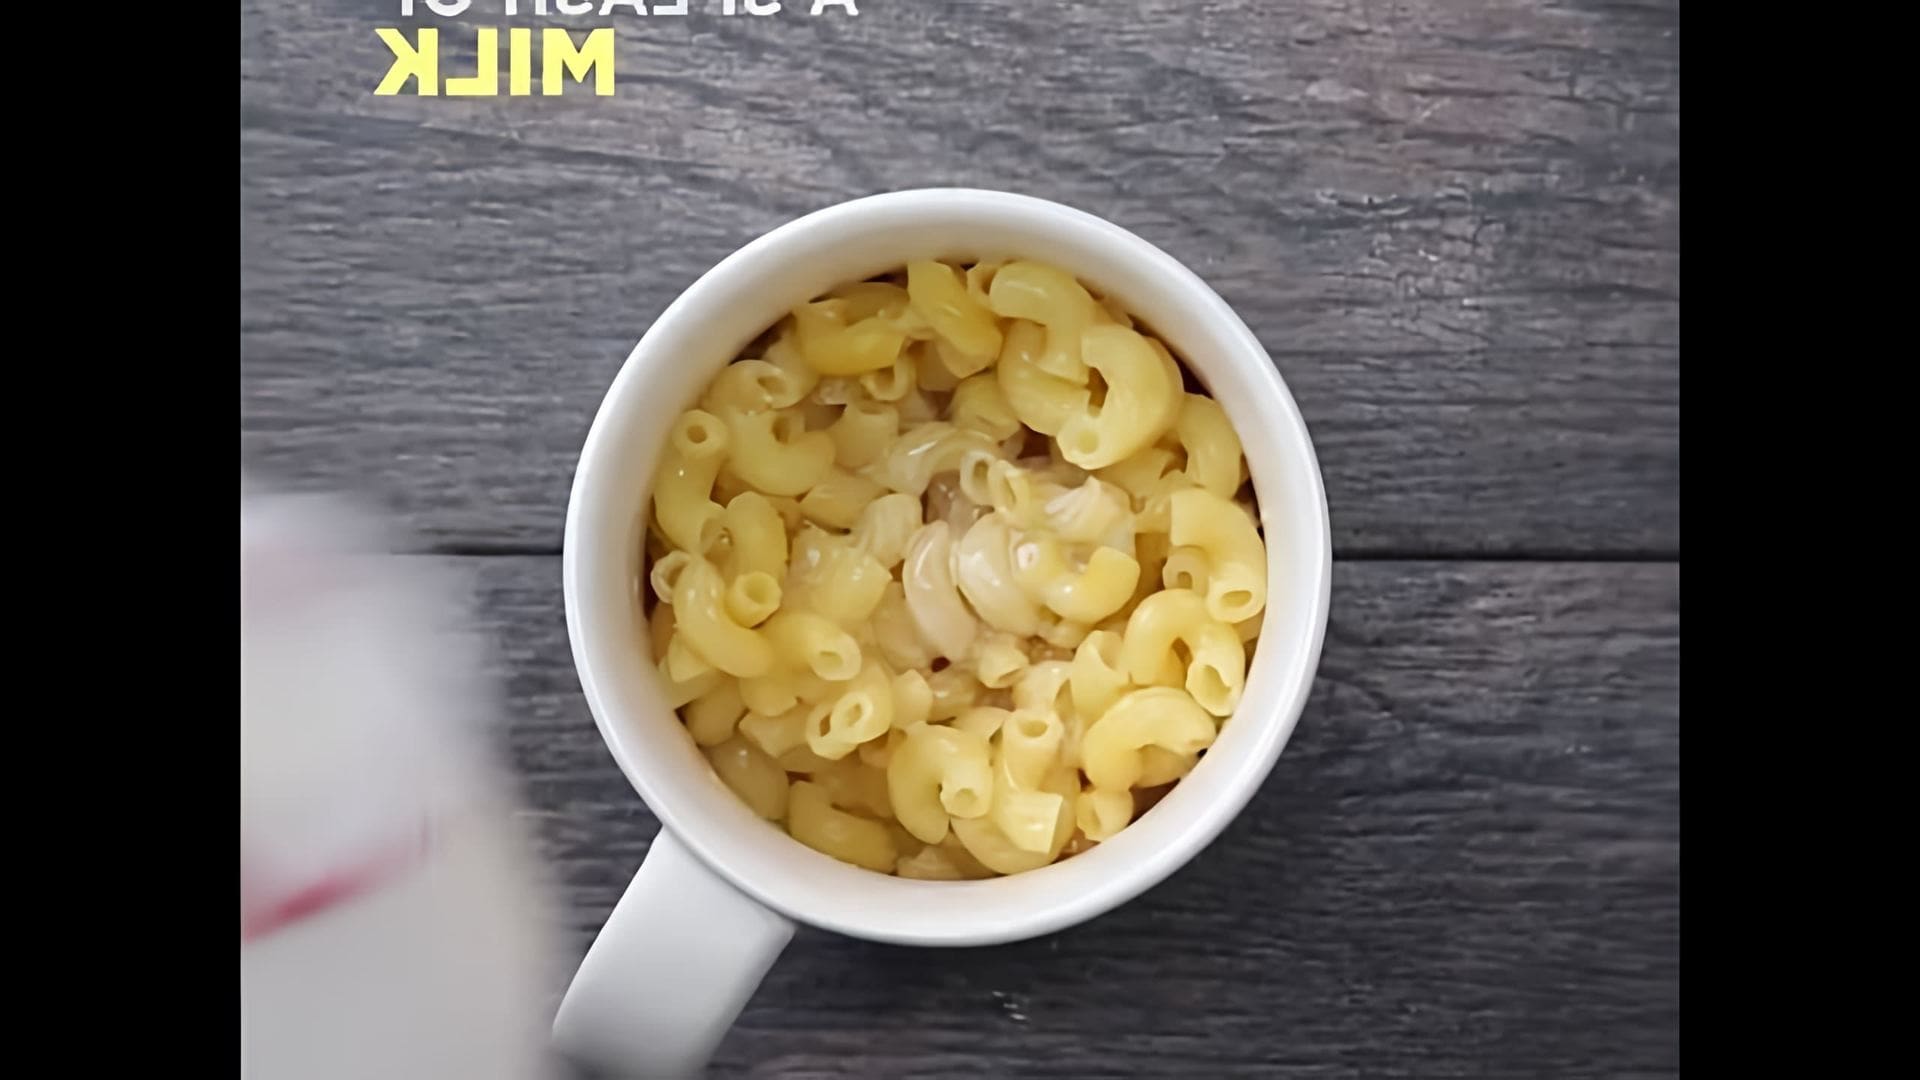 В этом видео-ролике показан быстрый и простой рецепт приготовления макарон с сыром в кружке за 5 минут